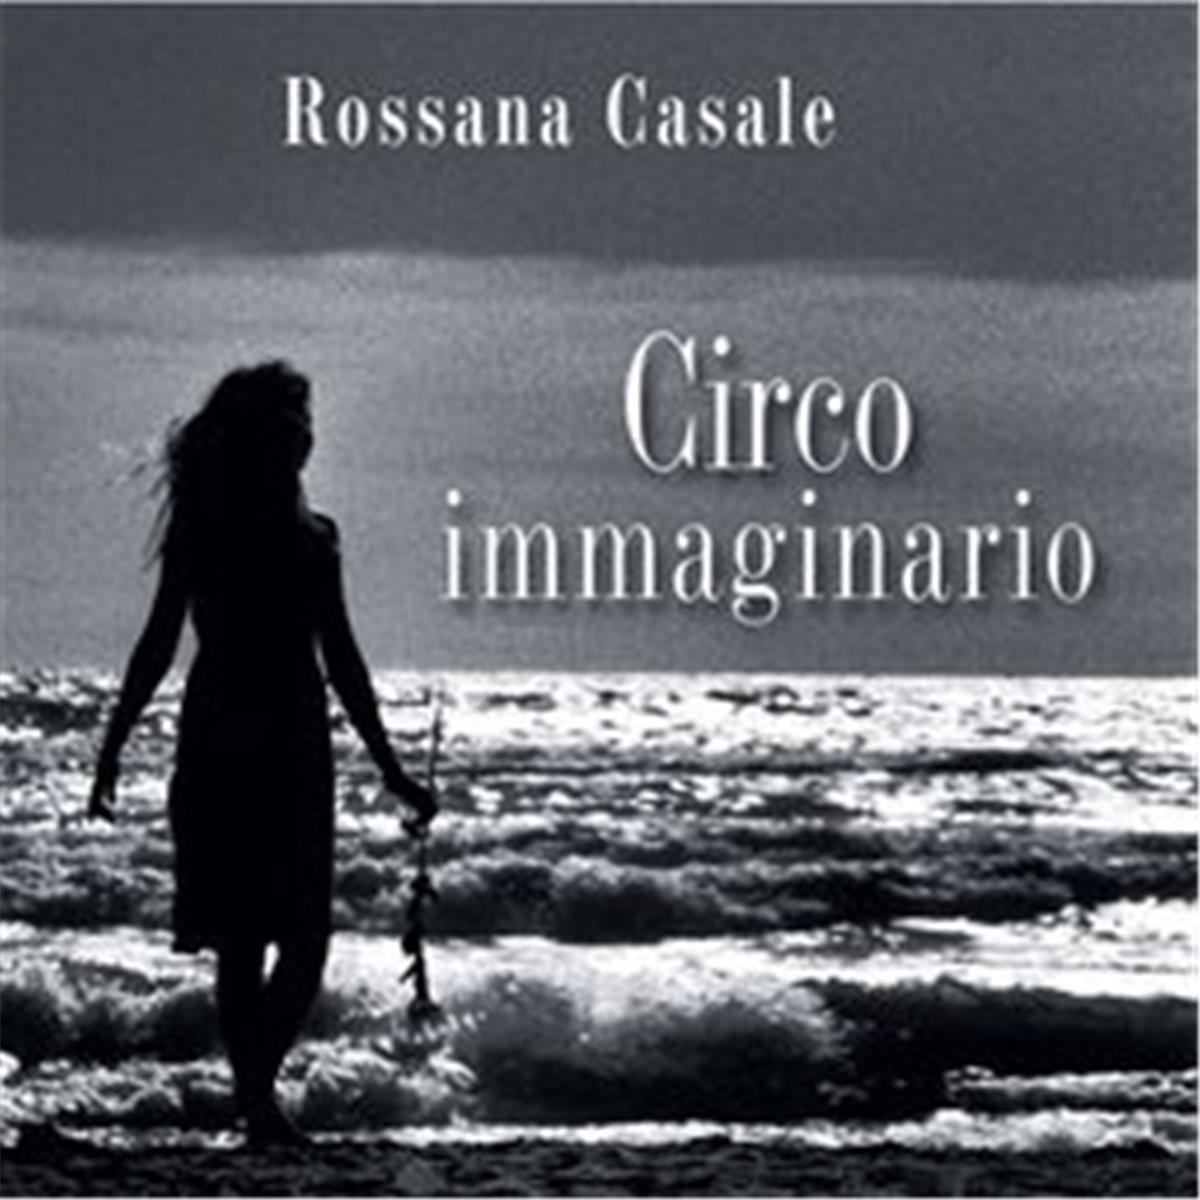 &#8220;Circo immaginario&#8221; di Rossana Casale compie 14 anni: ecco perché ascoltarlo ancora